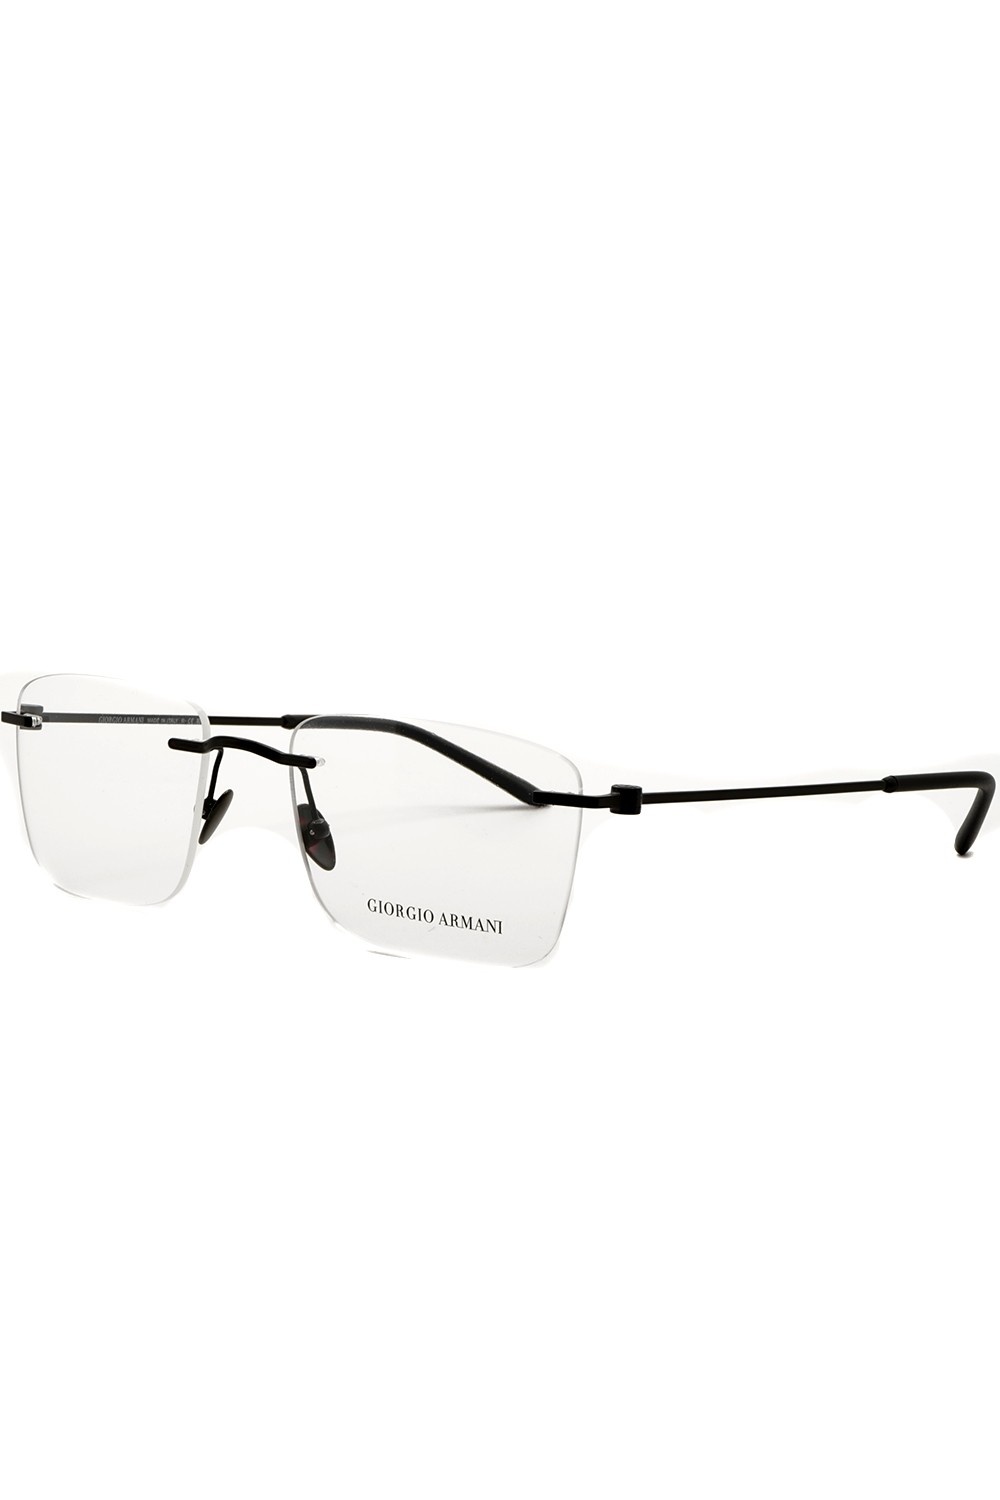 Giorgio Armani - Occhiali da vista in metallo glasant rettangolari unisex nero